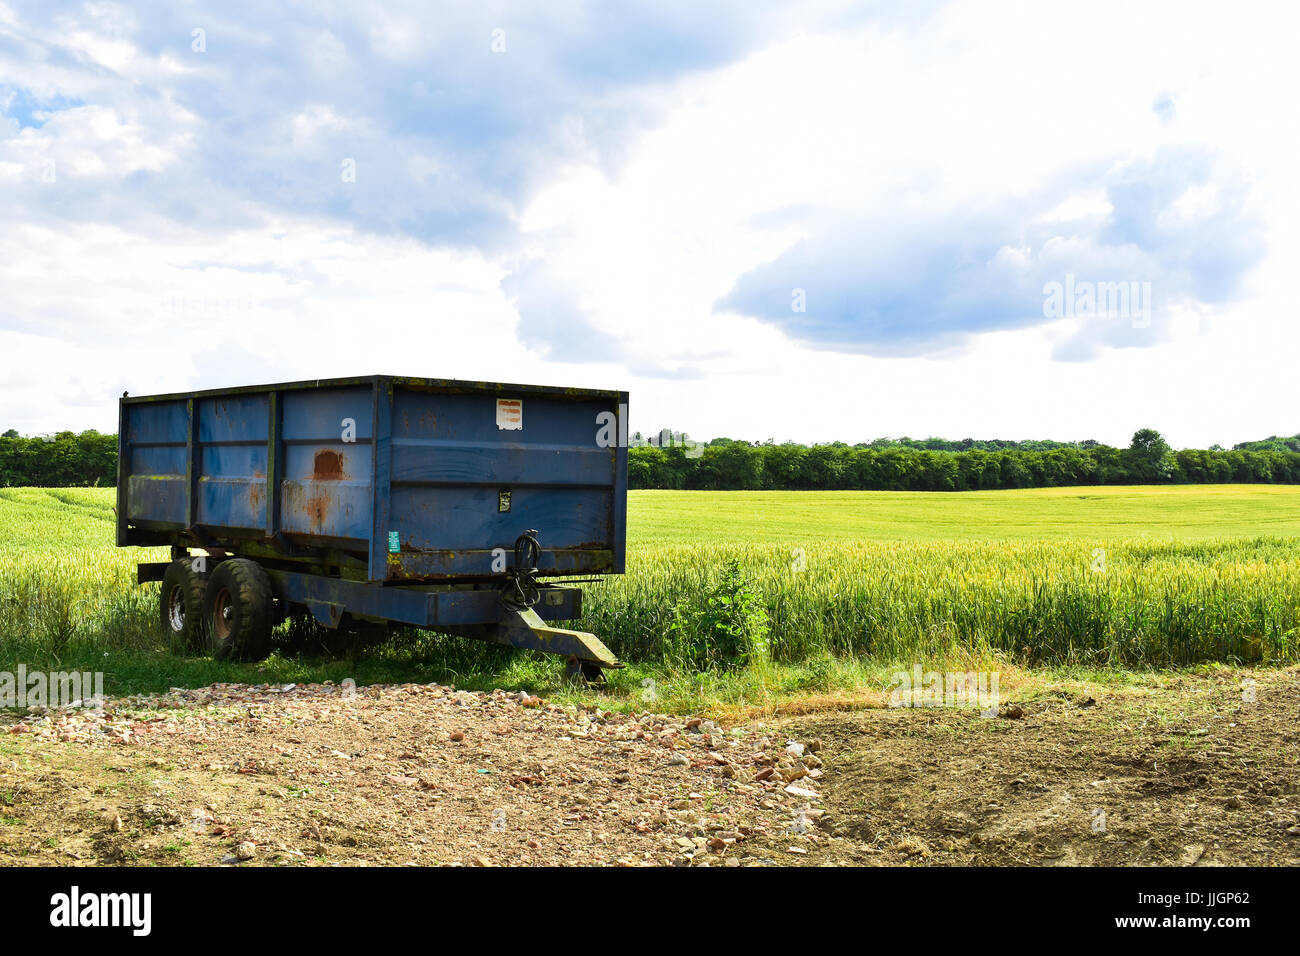 Rusty viejo tractor agrícola azul sentado en un campo de trigo antes de la cosecha en el verano en Inglaterra Foto de stock